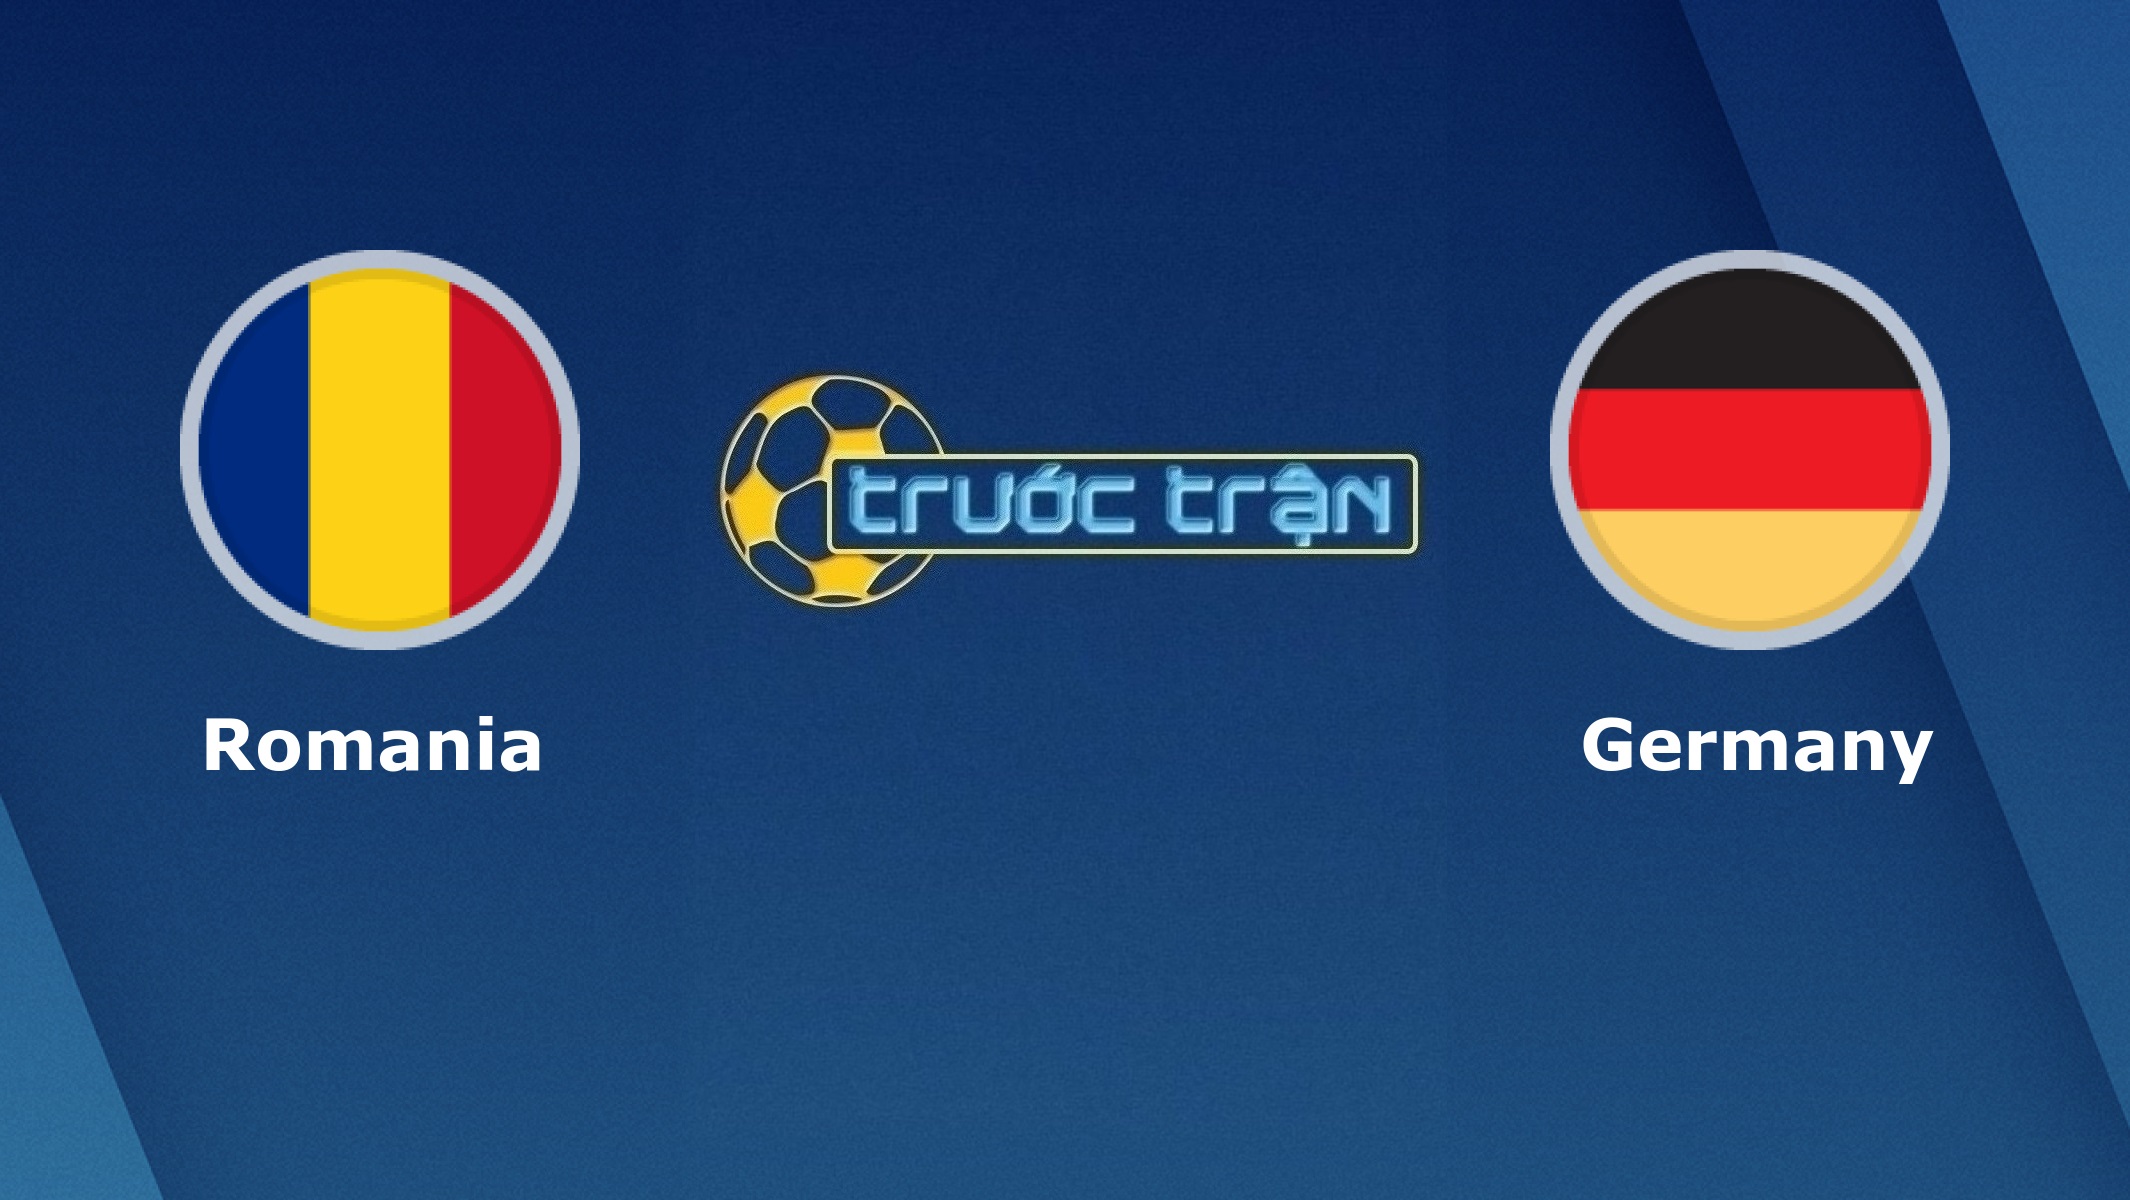 Romania vs Đức – Tip kèo bóng đá hôm nay – 01h45 29/03/2021